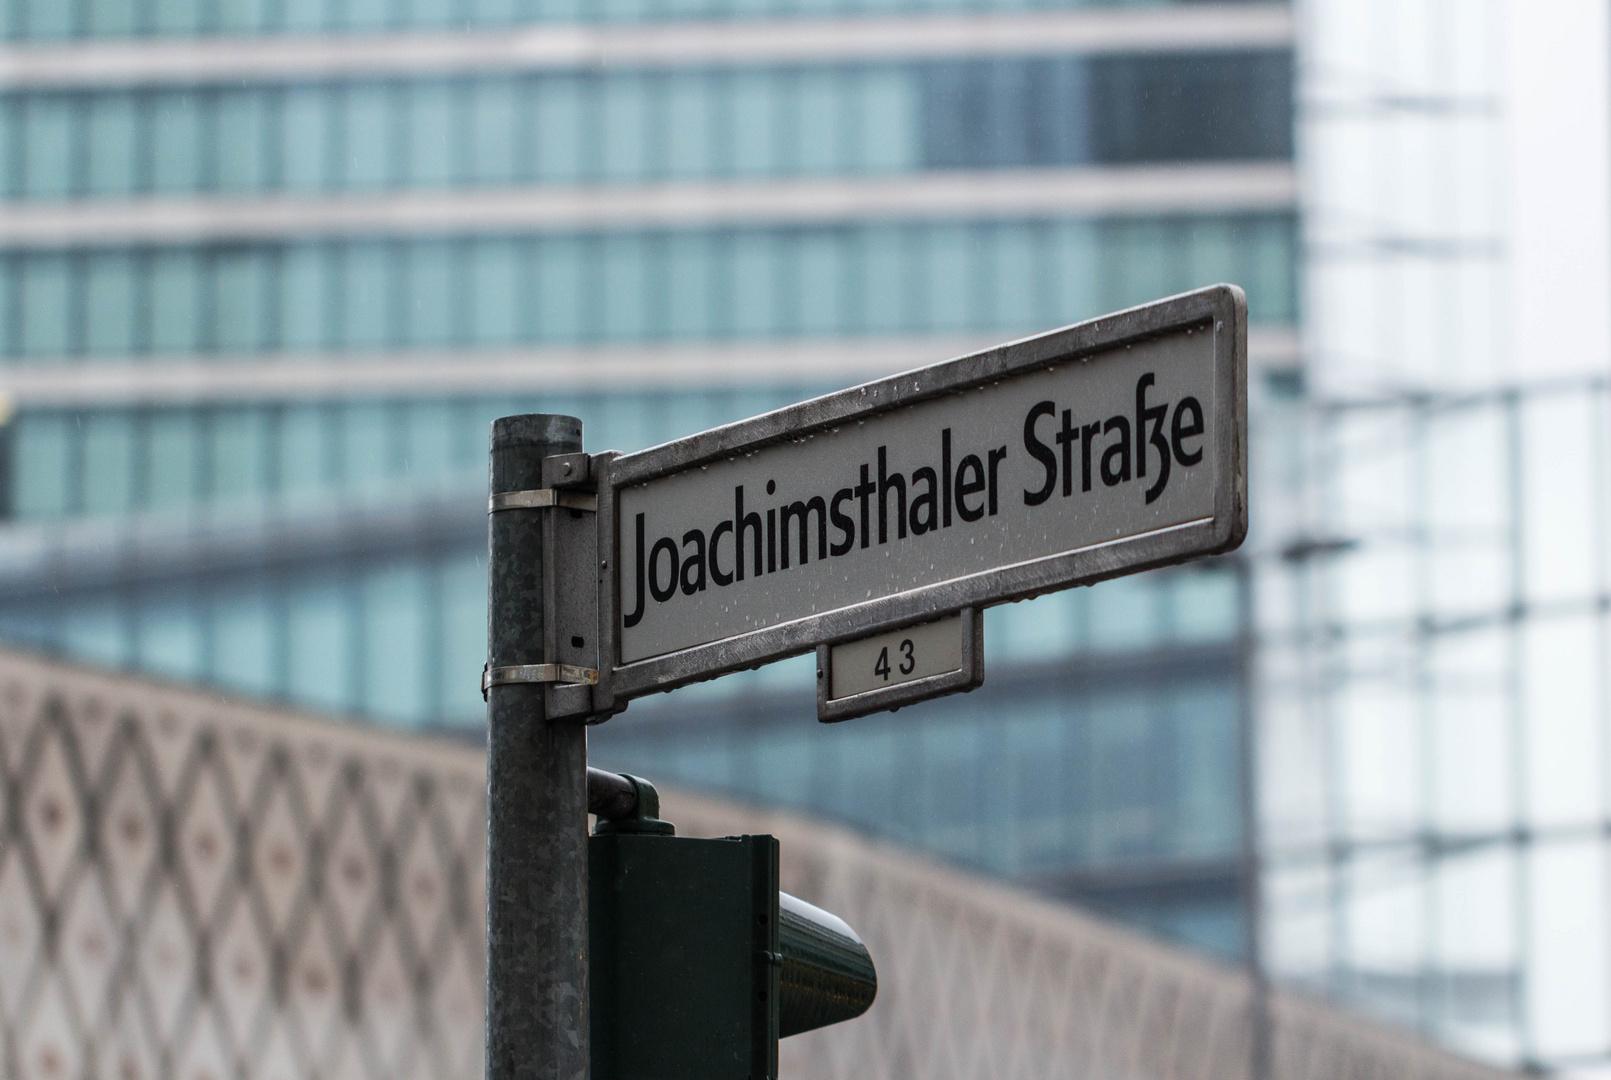 Joachimsthaler Straße